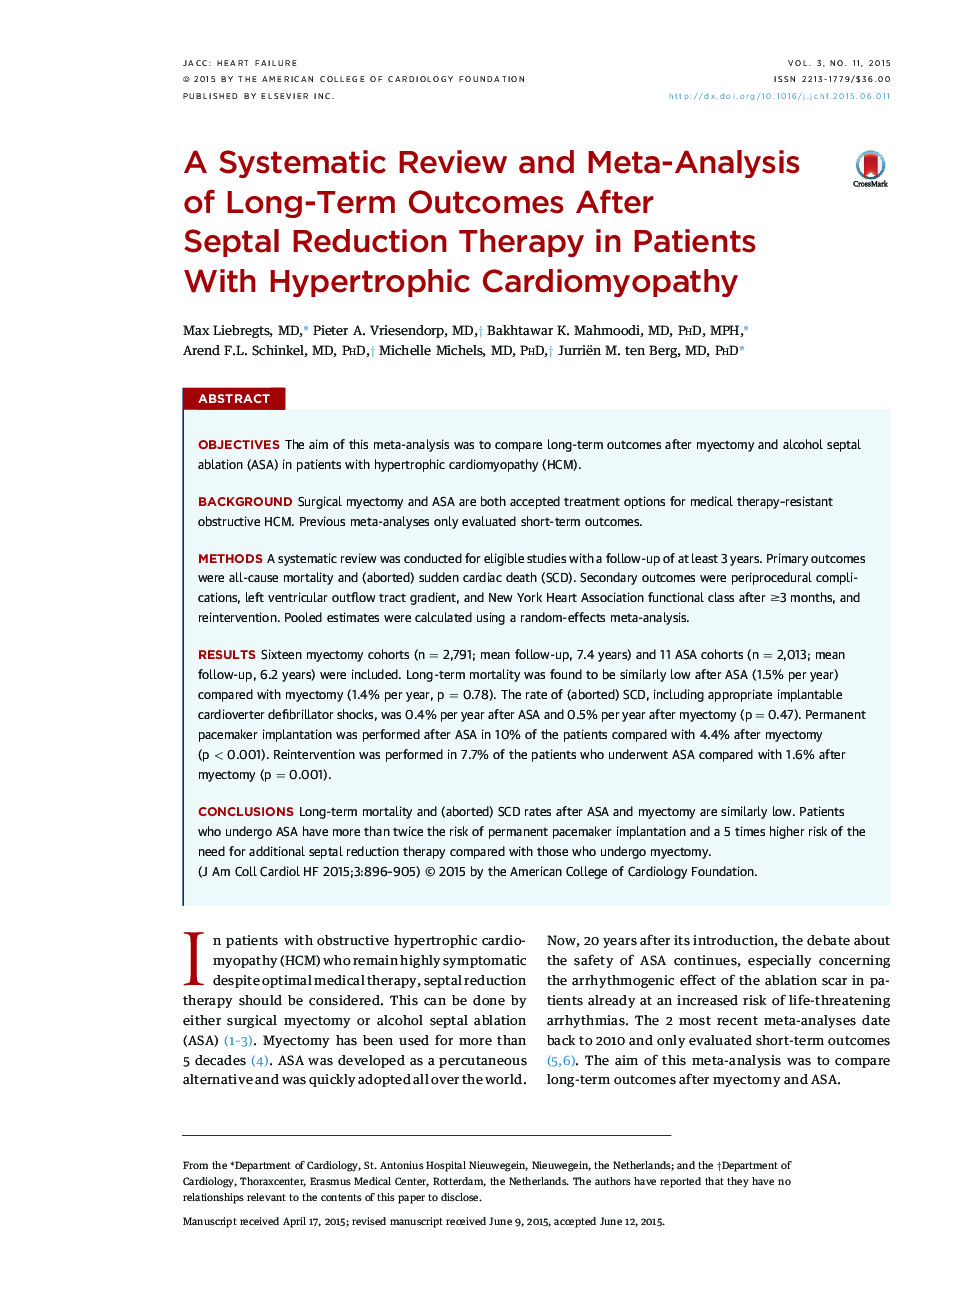 یک بررسی سیستماتیک و متا آنالیز نتایج بلند مدت پس از درمان سپتال در بیماران مبتلا به کراتومیوپاتی هیپرتروفی 